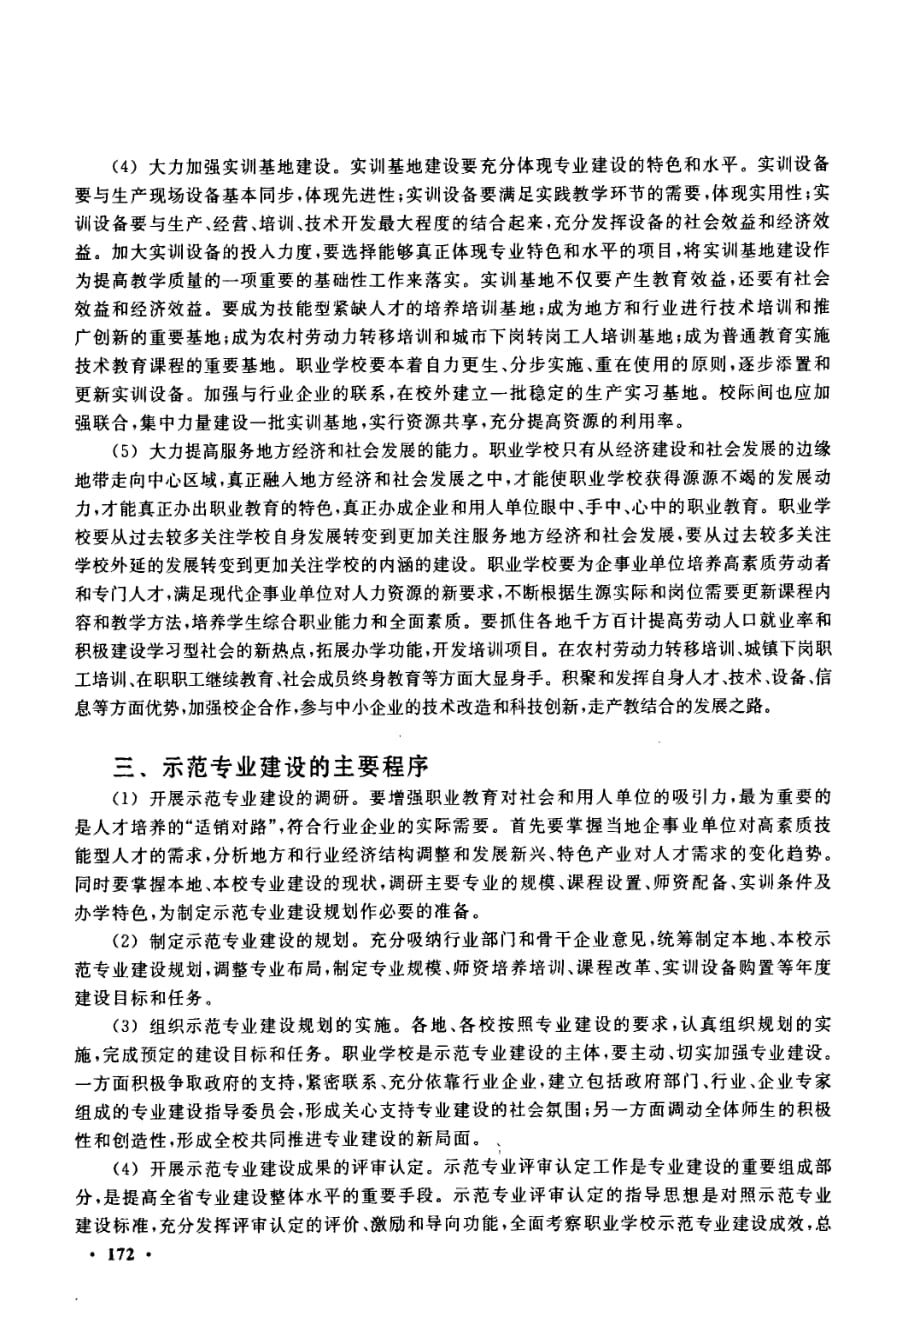 大力加强示范专业建设努力提升江苏职业教育的整体水平_第3页